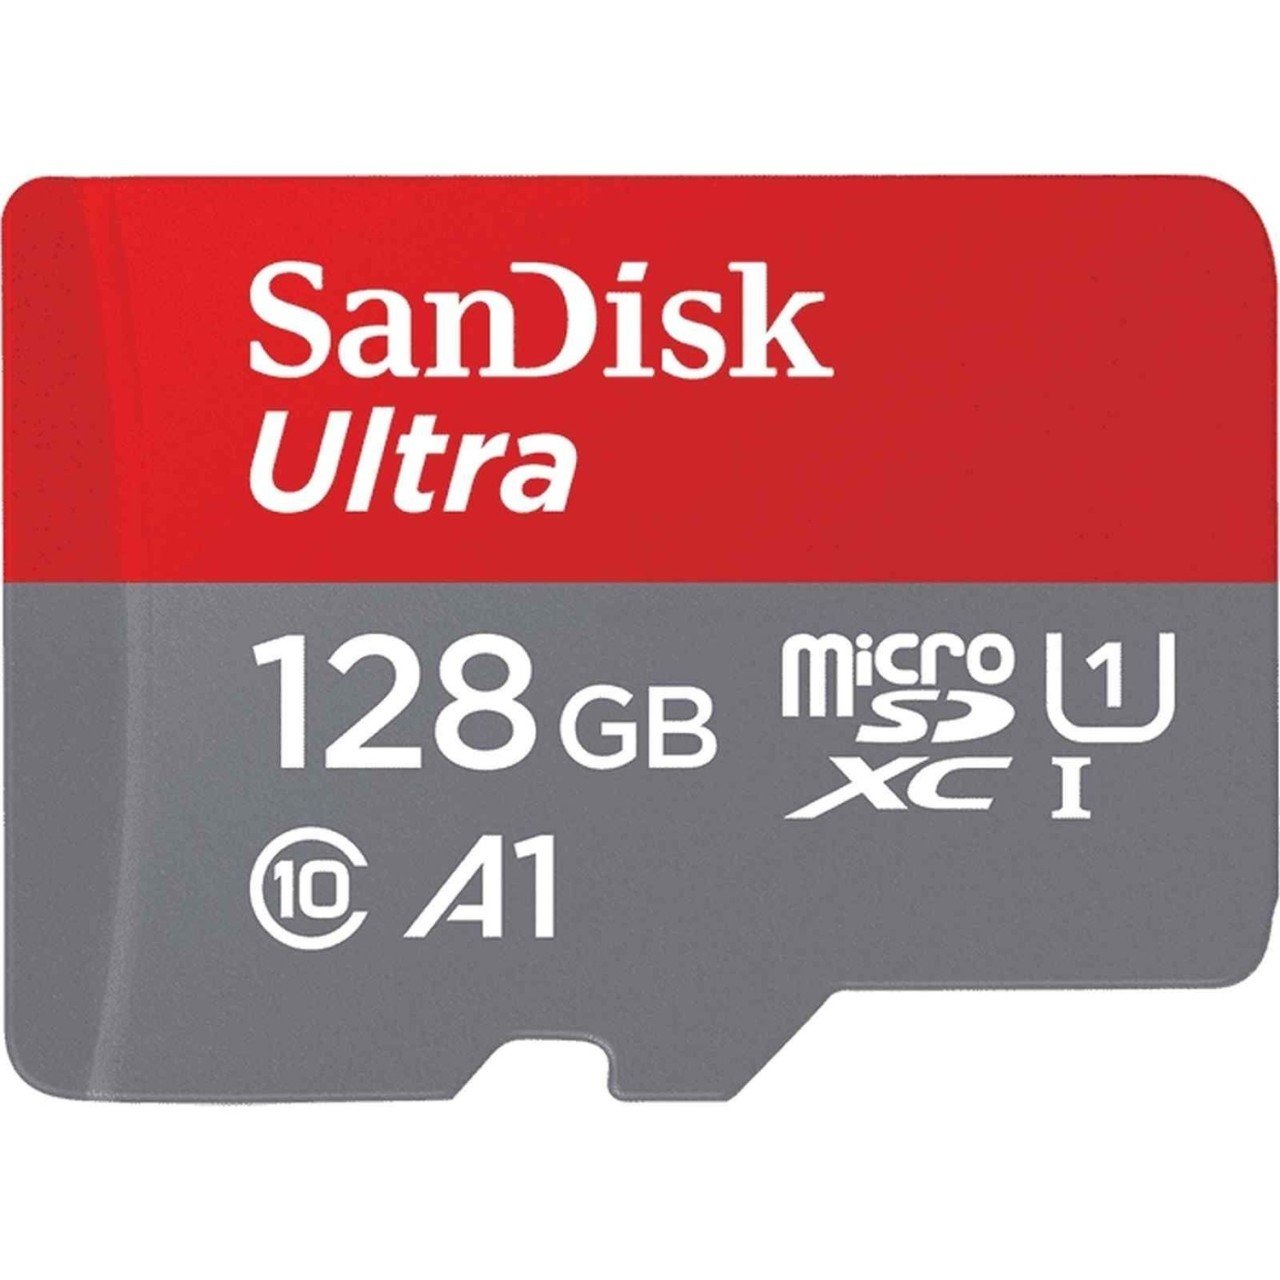 Sandisk 128 GB Micro SDXC Ultra class10 UHS - I u1 - 80 MB/s 533x A1 Hafıza Kartı